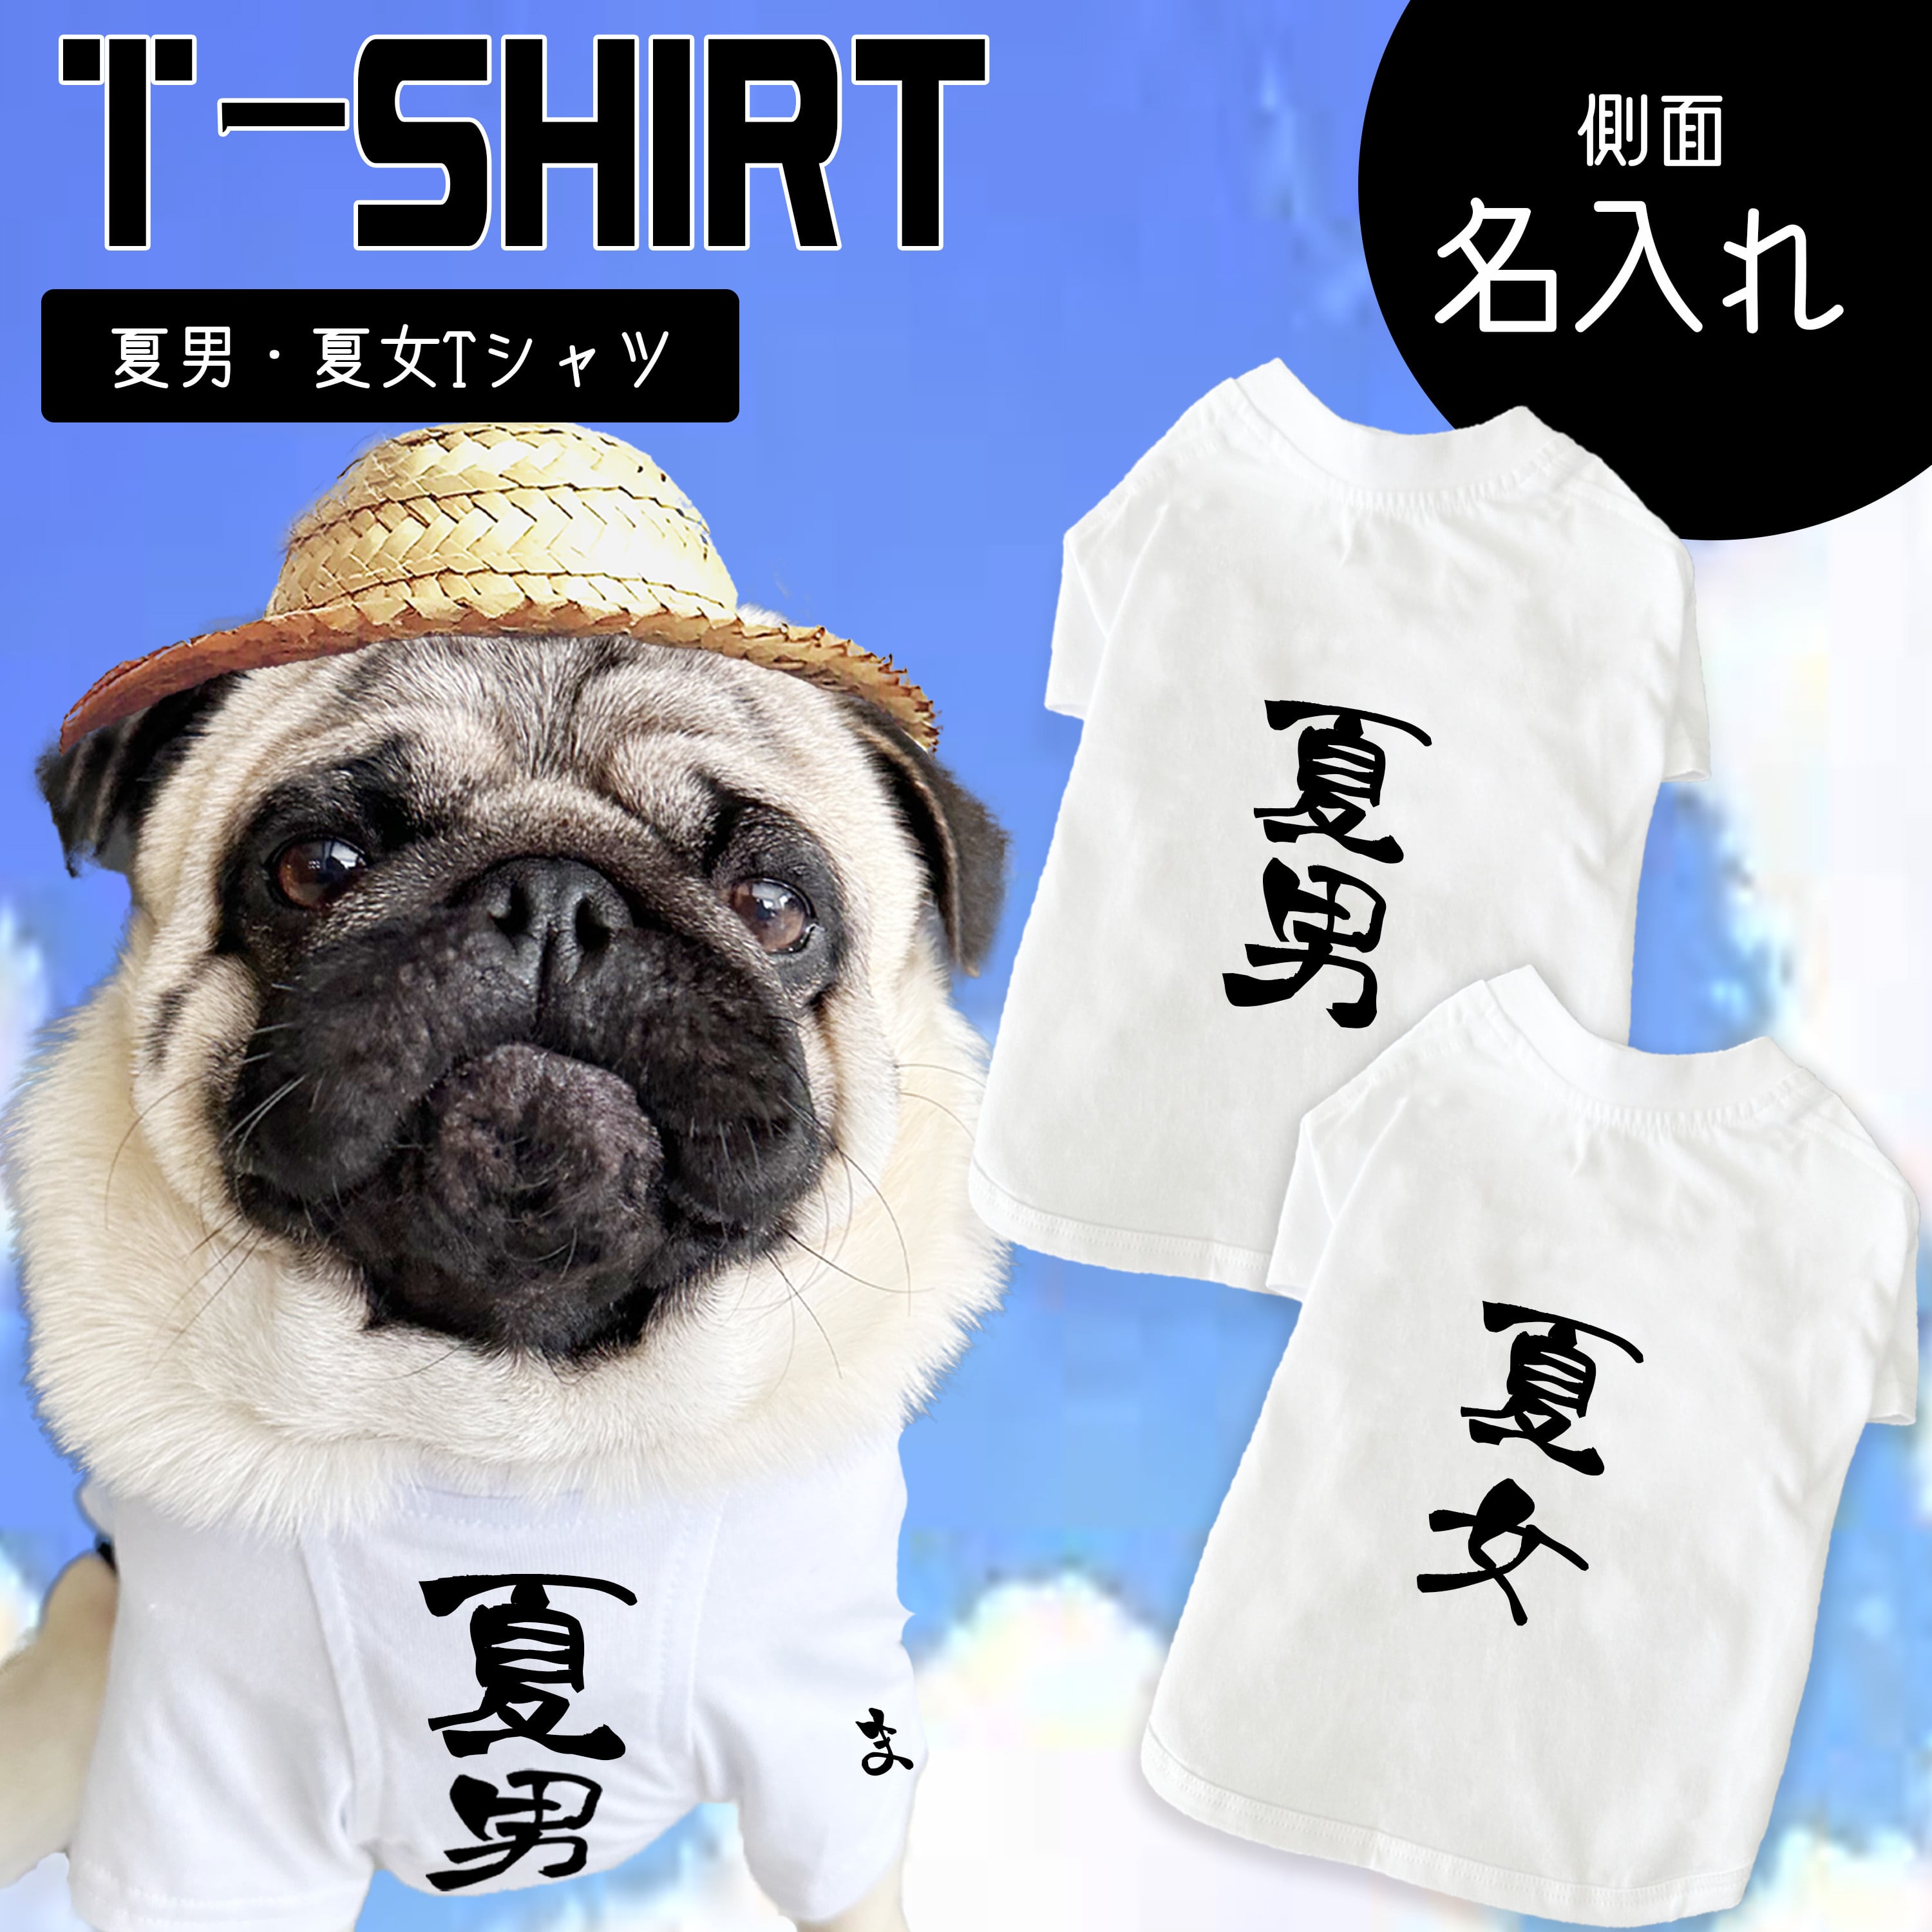 夏男 夏女 Tシャツ【Tシャツ】名入れ 白 Tシャツ おもしろ 犬用 夏服